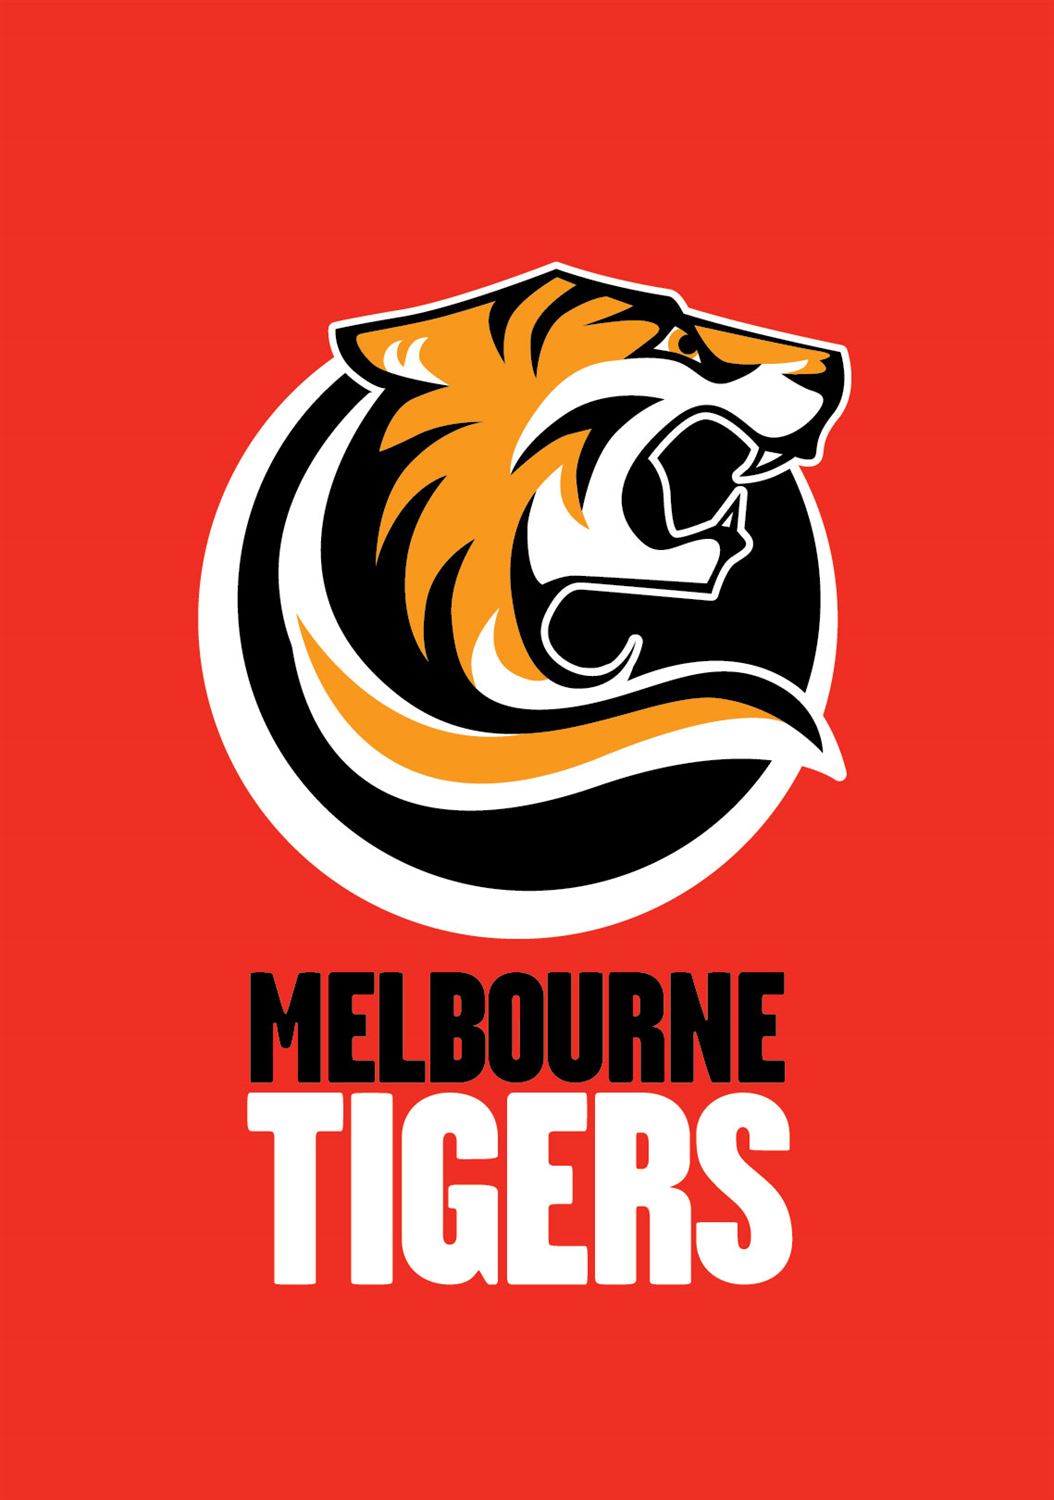 墨爾本澳洲虎籃球俱樂部(墨爾本老虎)